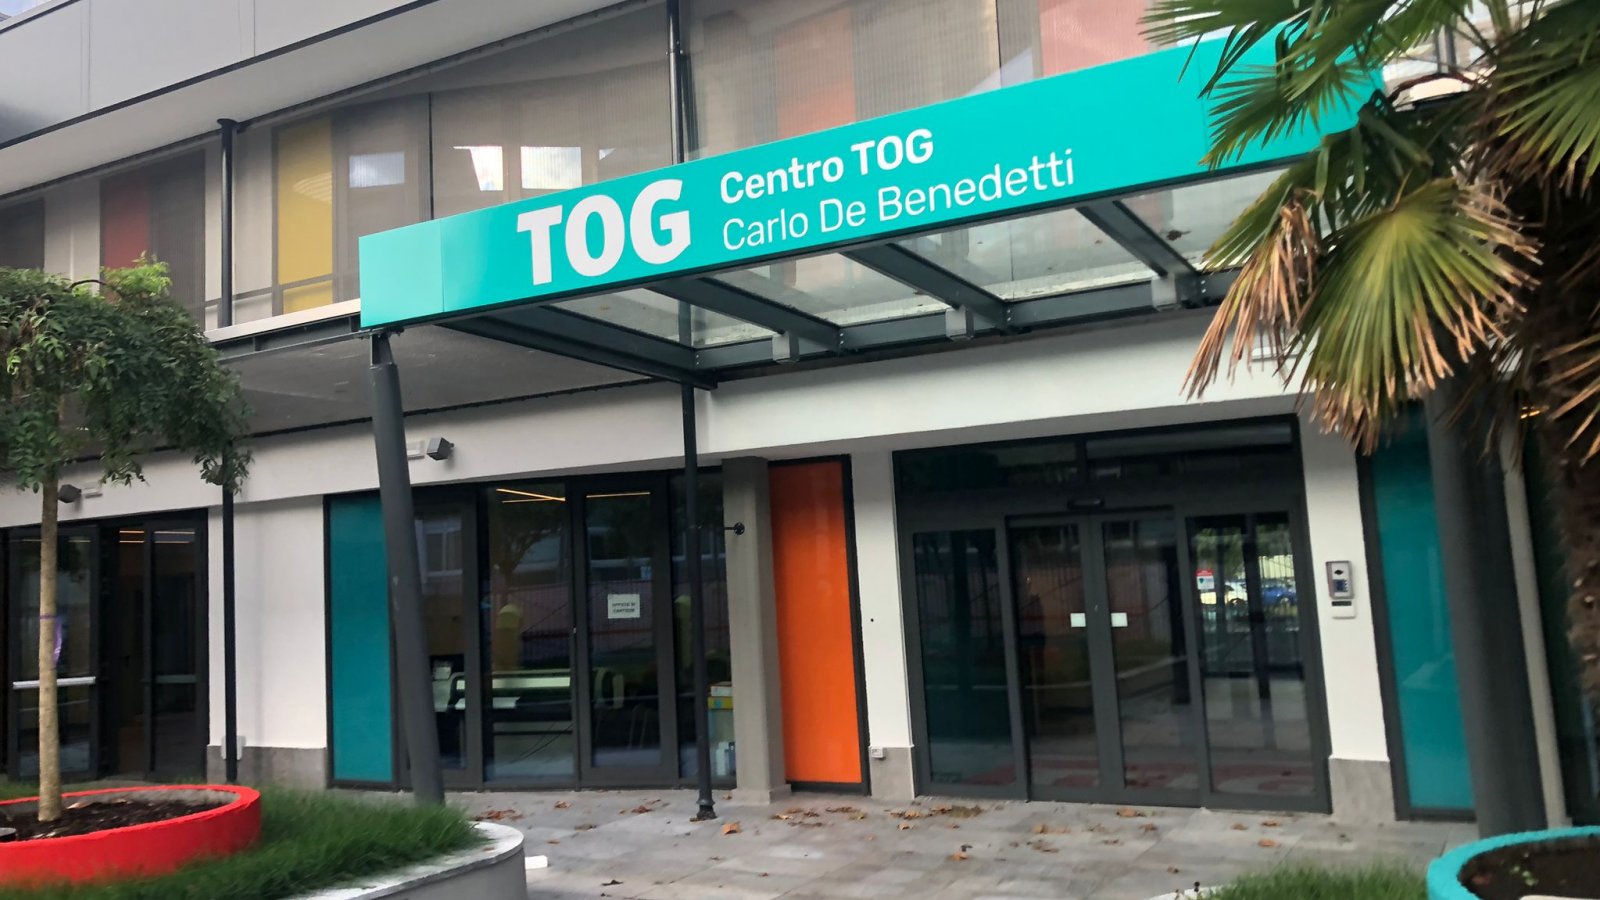 Si avvicina l’inaugurazione del centro TOG Carlo De Benedetti